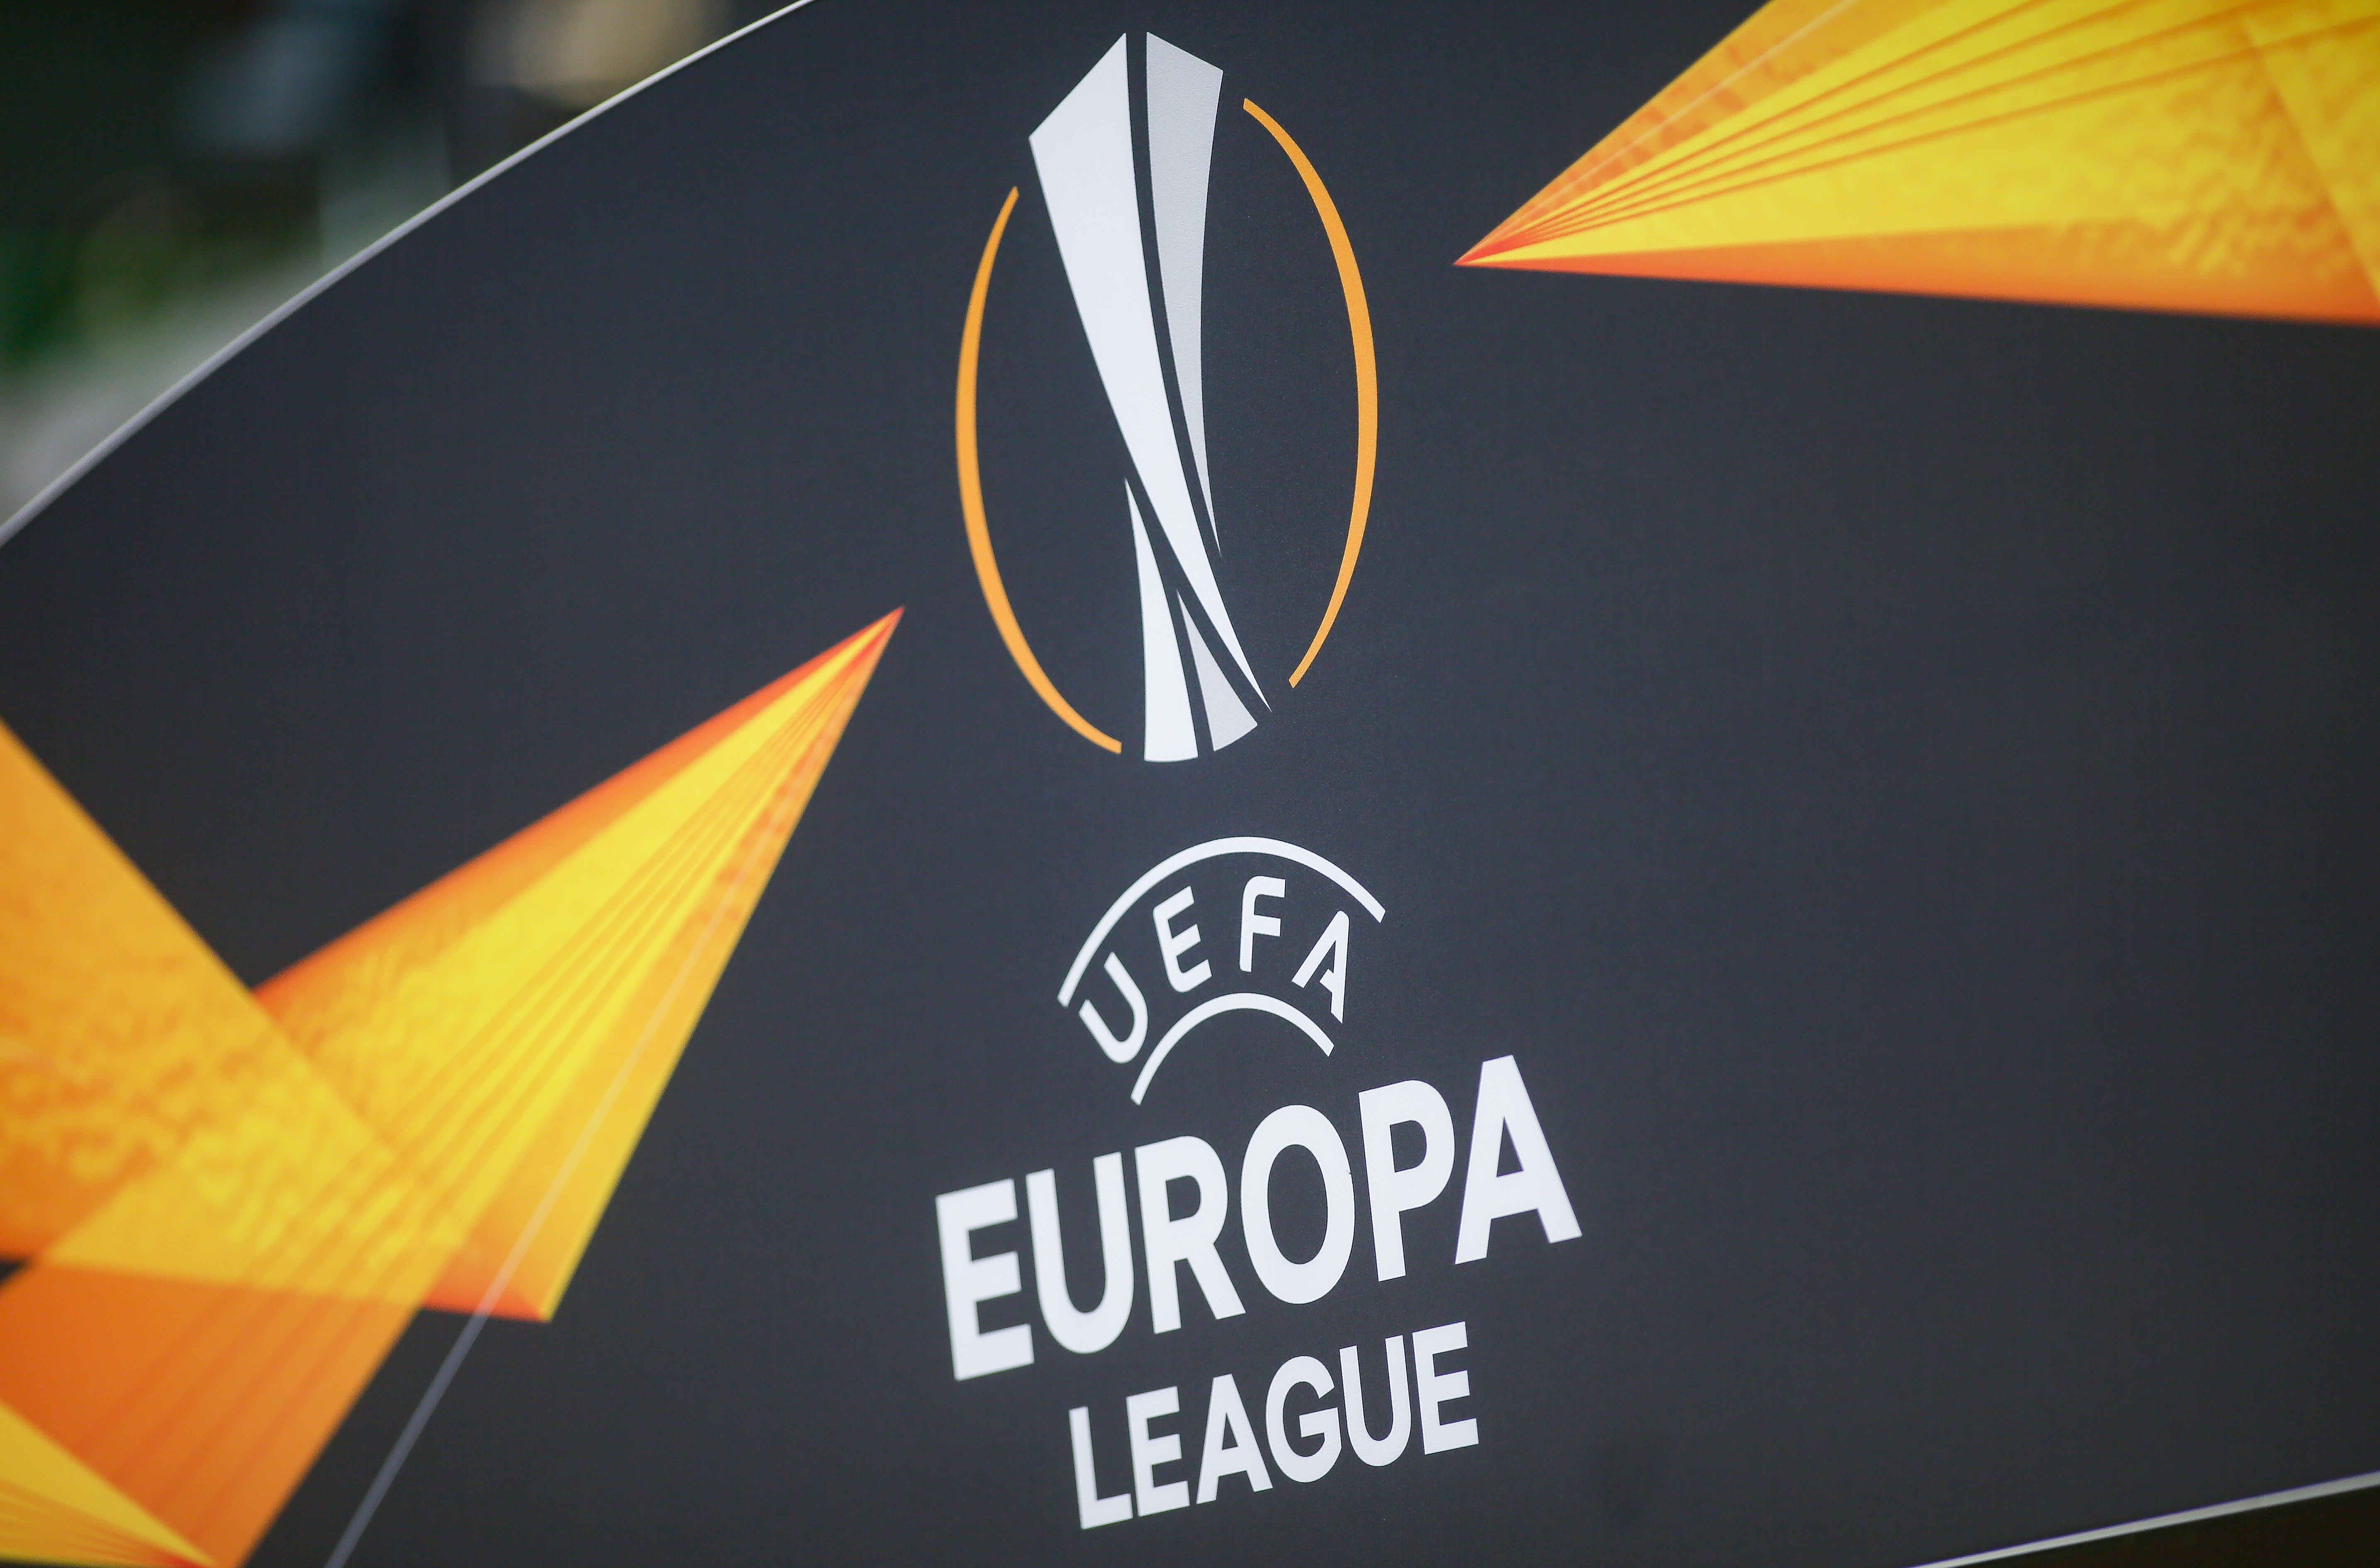 Europa League, etapa 4 | Moruțan, Cicâldău și Hagi, în prim-plan. Programul complet